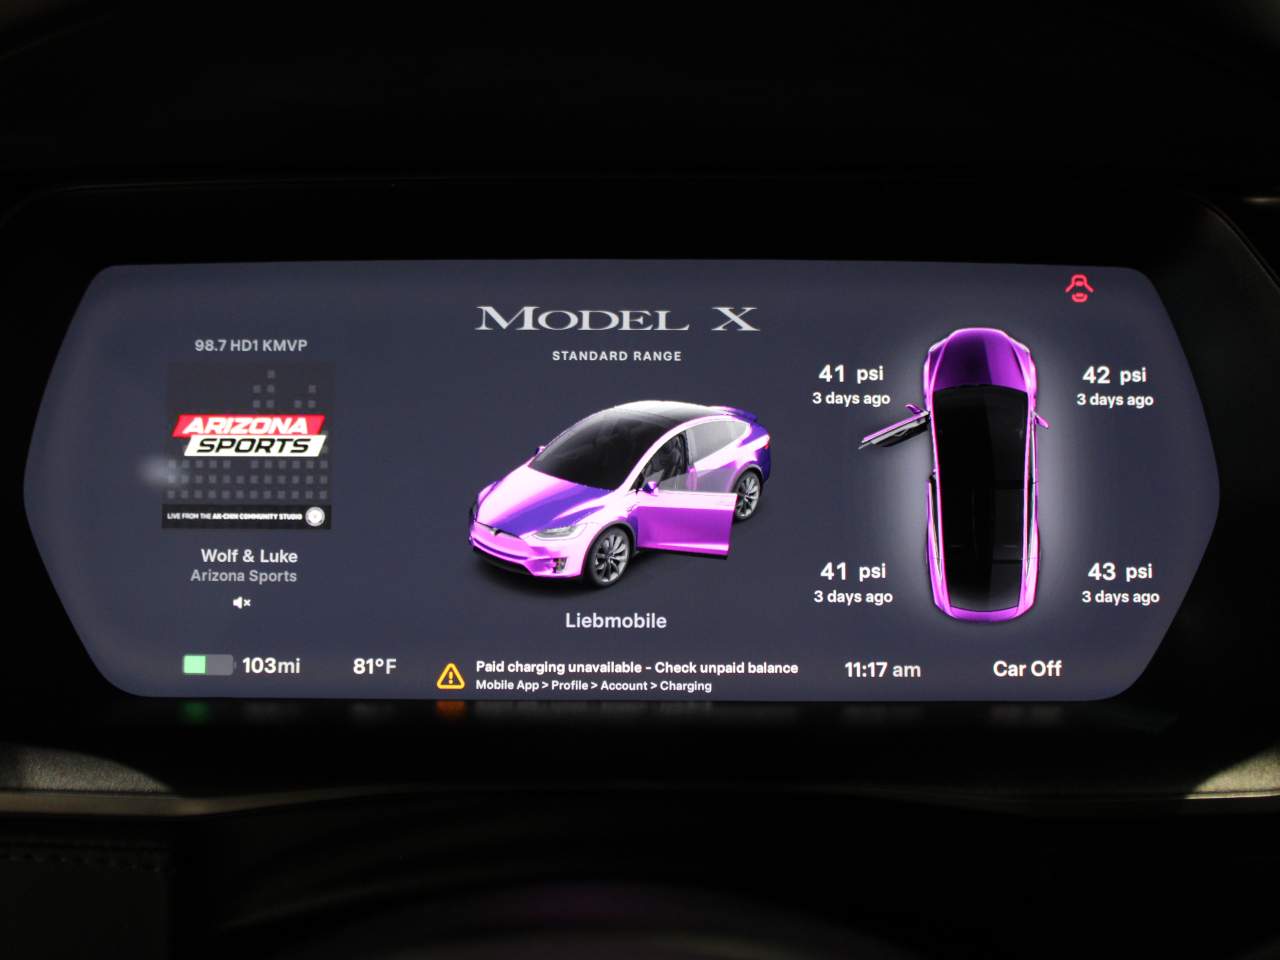 2019 Tesla Model X 75D